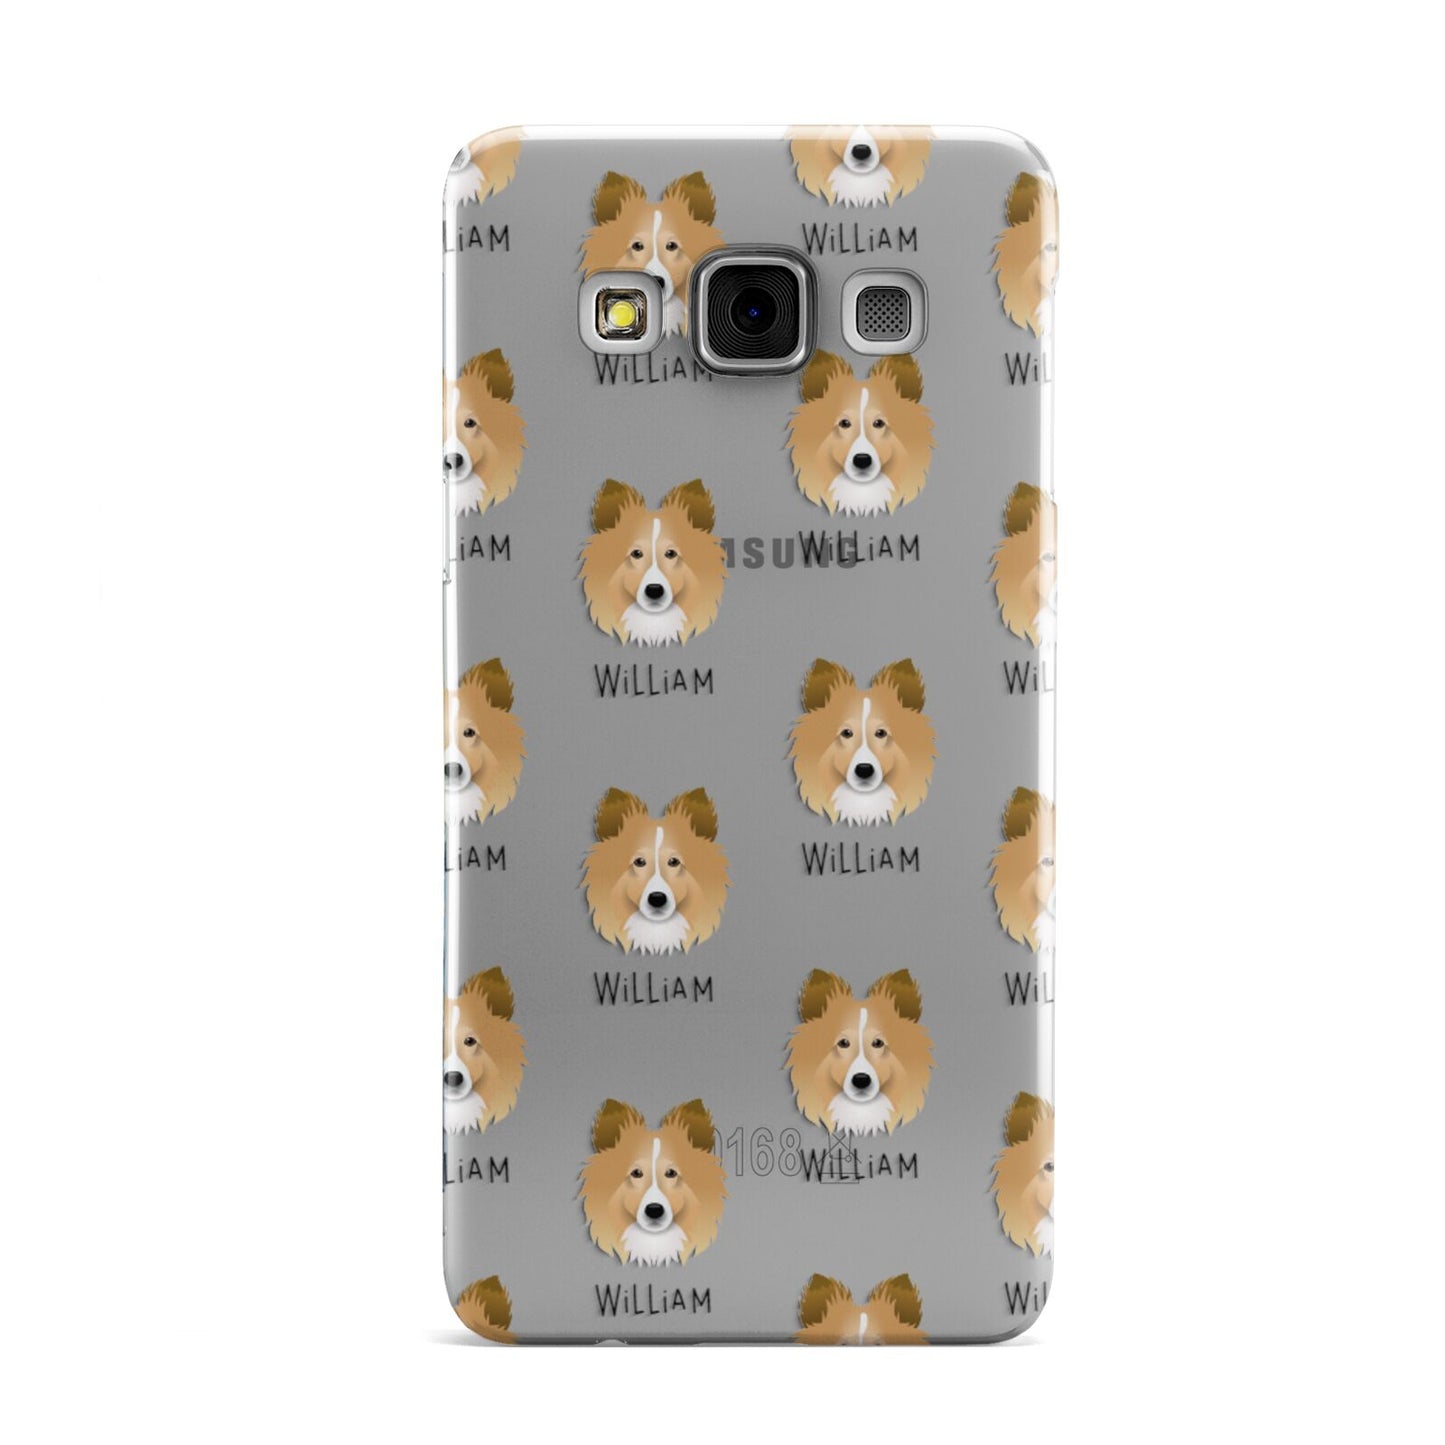 Shetland Sheepdog Icon with Name Samsung Galaxy A3 Case